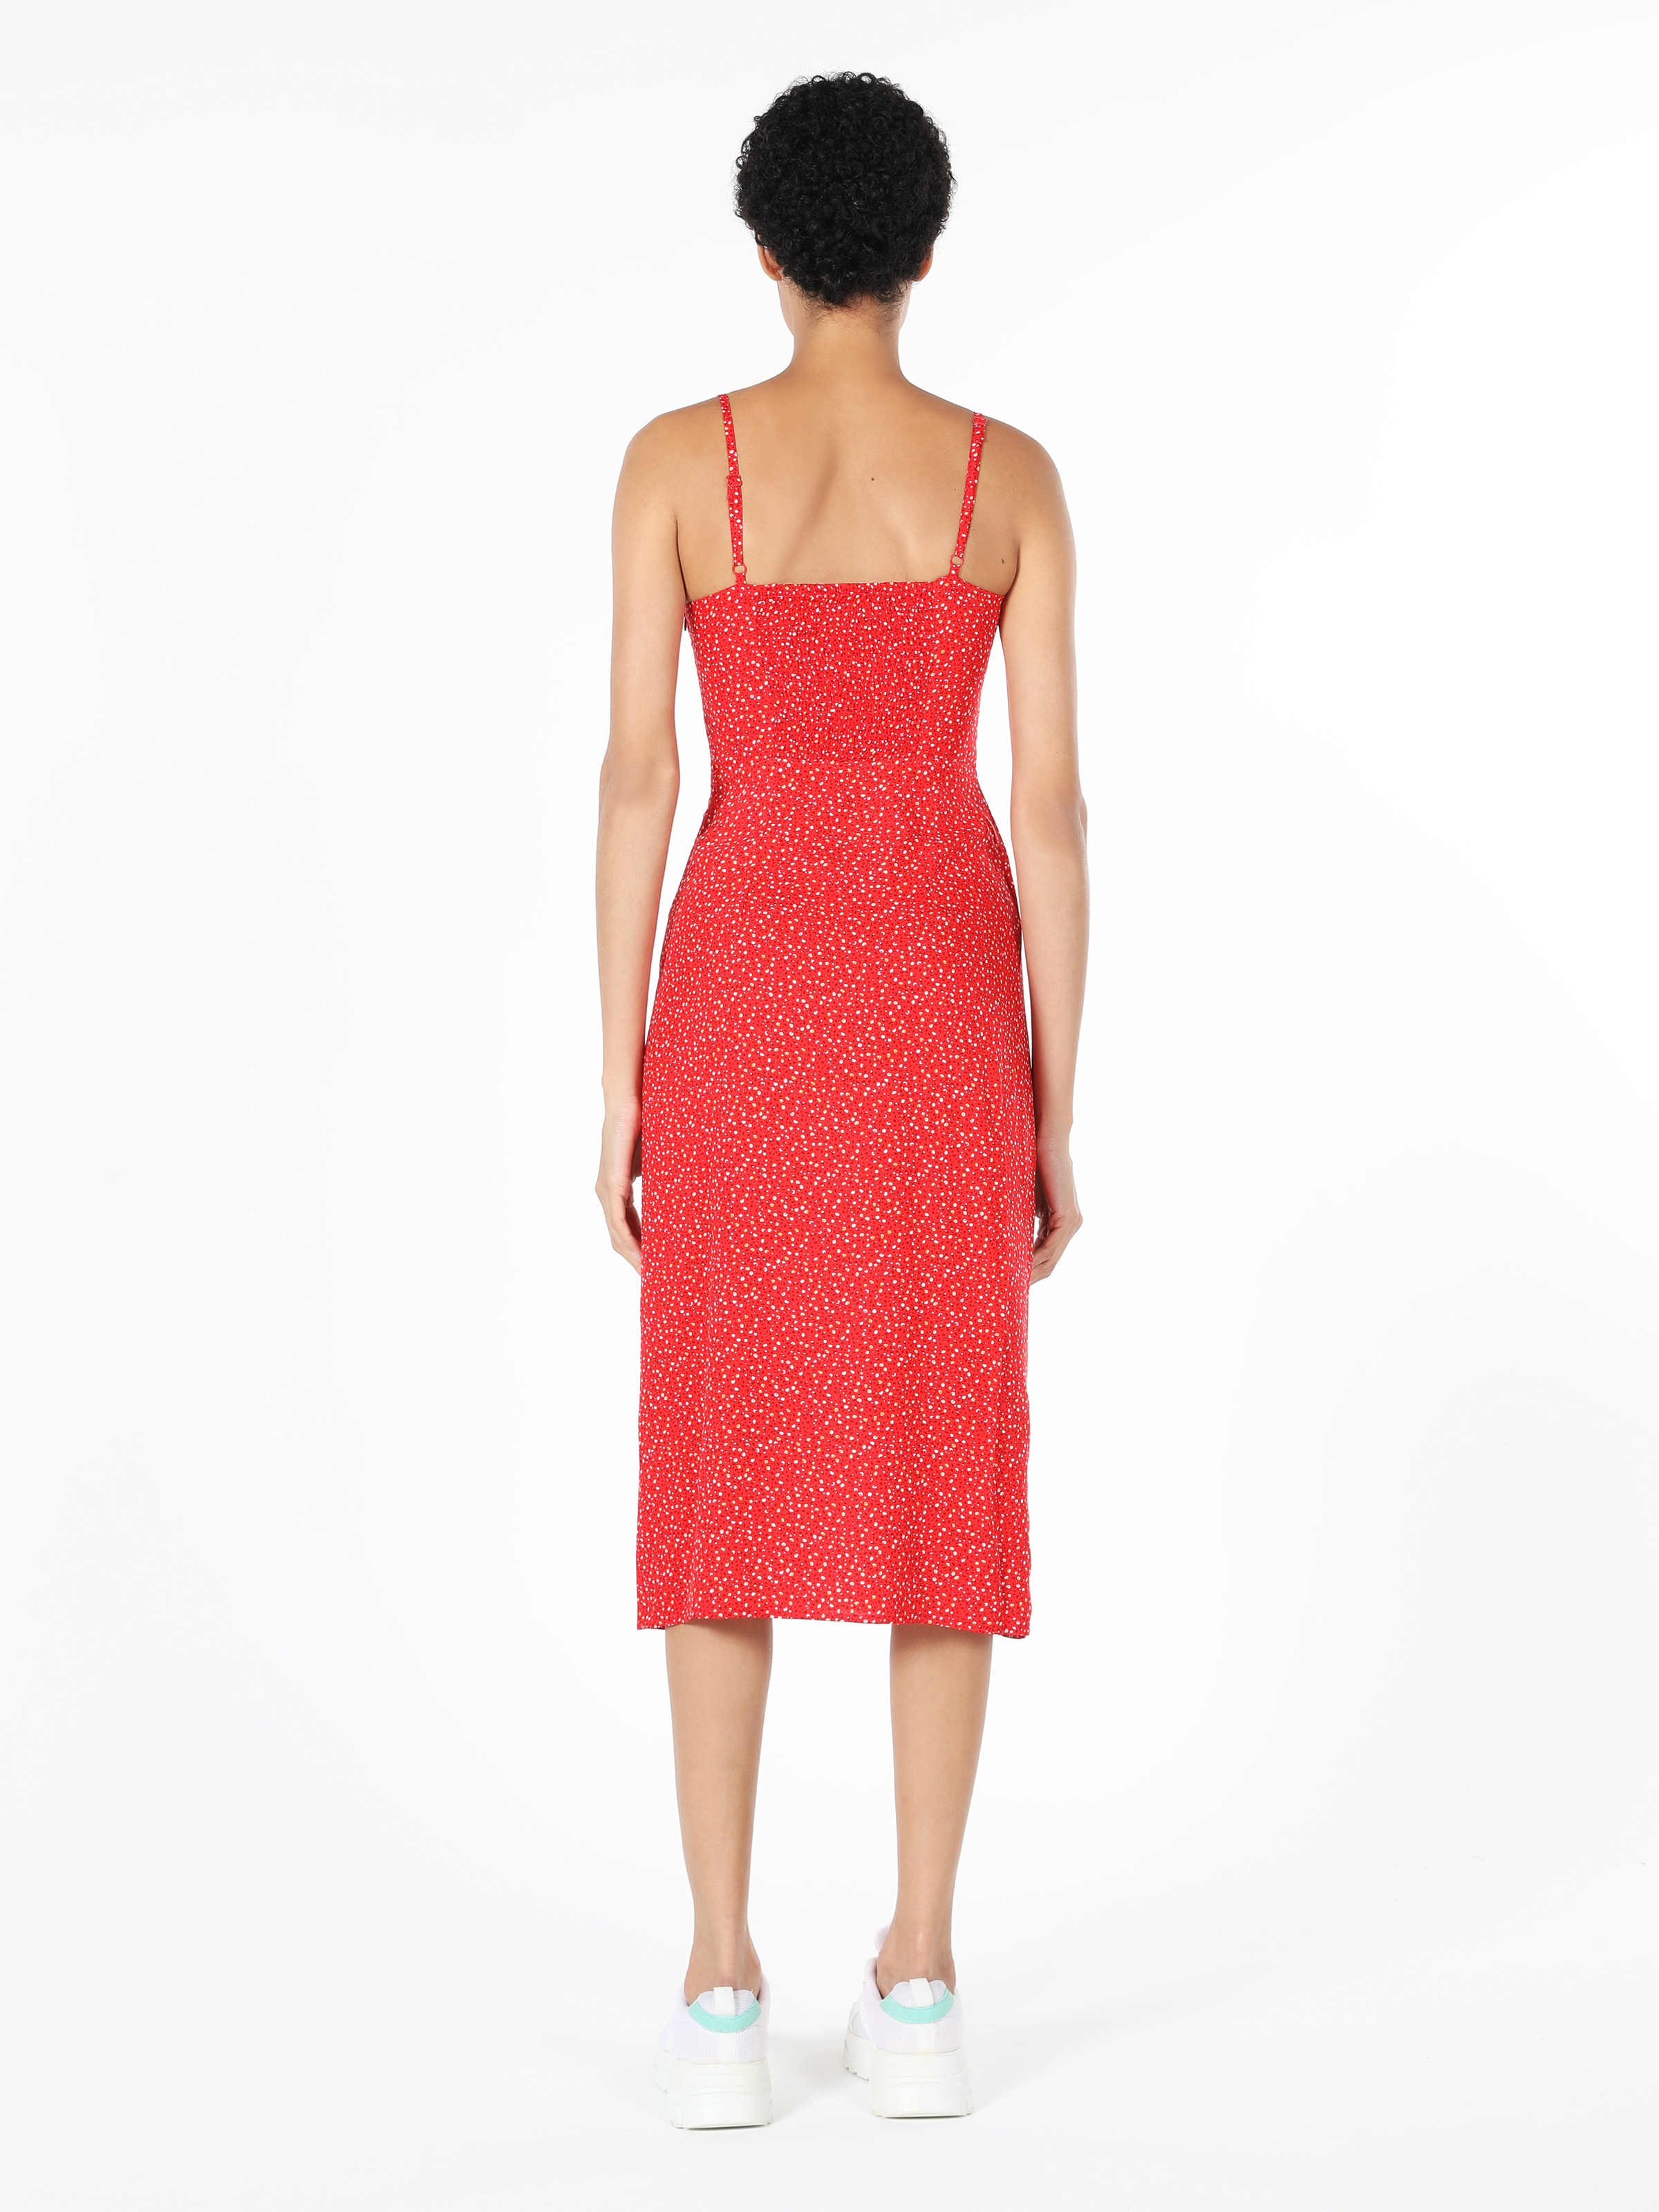 Показати інформацію про Сукня Жіноча Червона Cl1059506